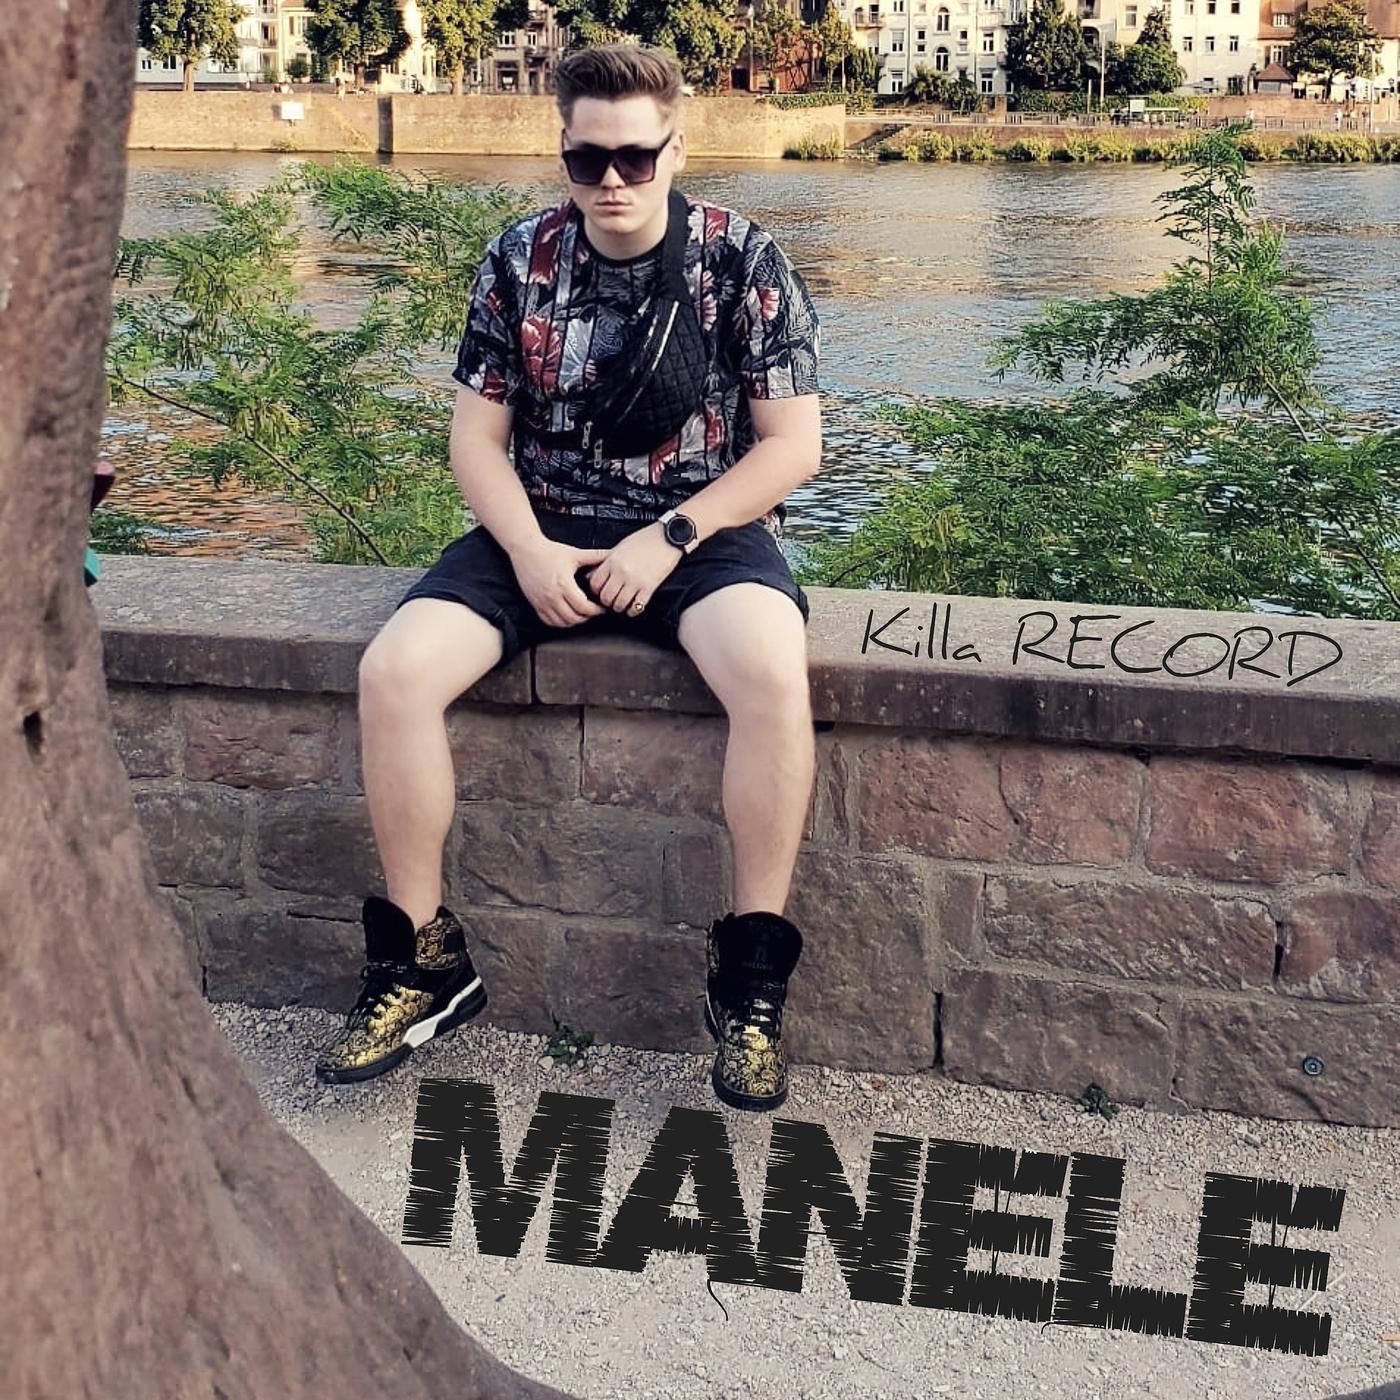 Постер альбома Manele